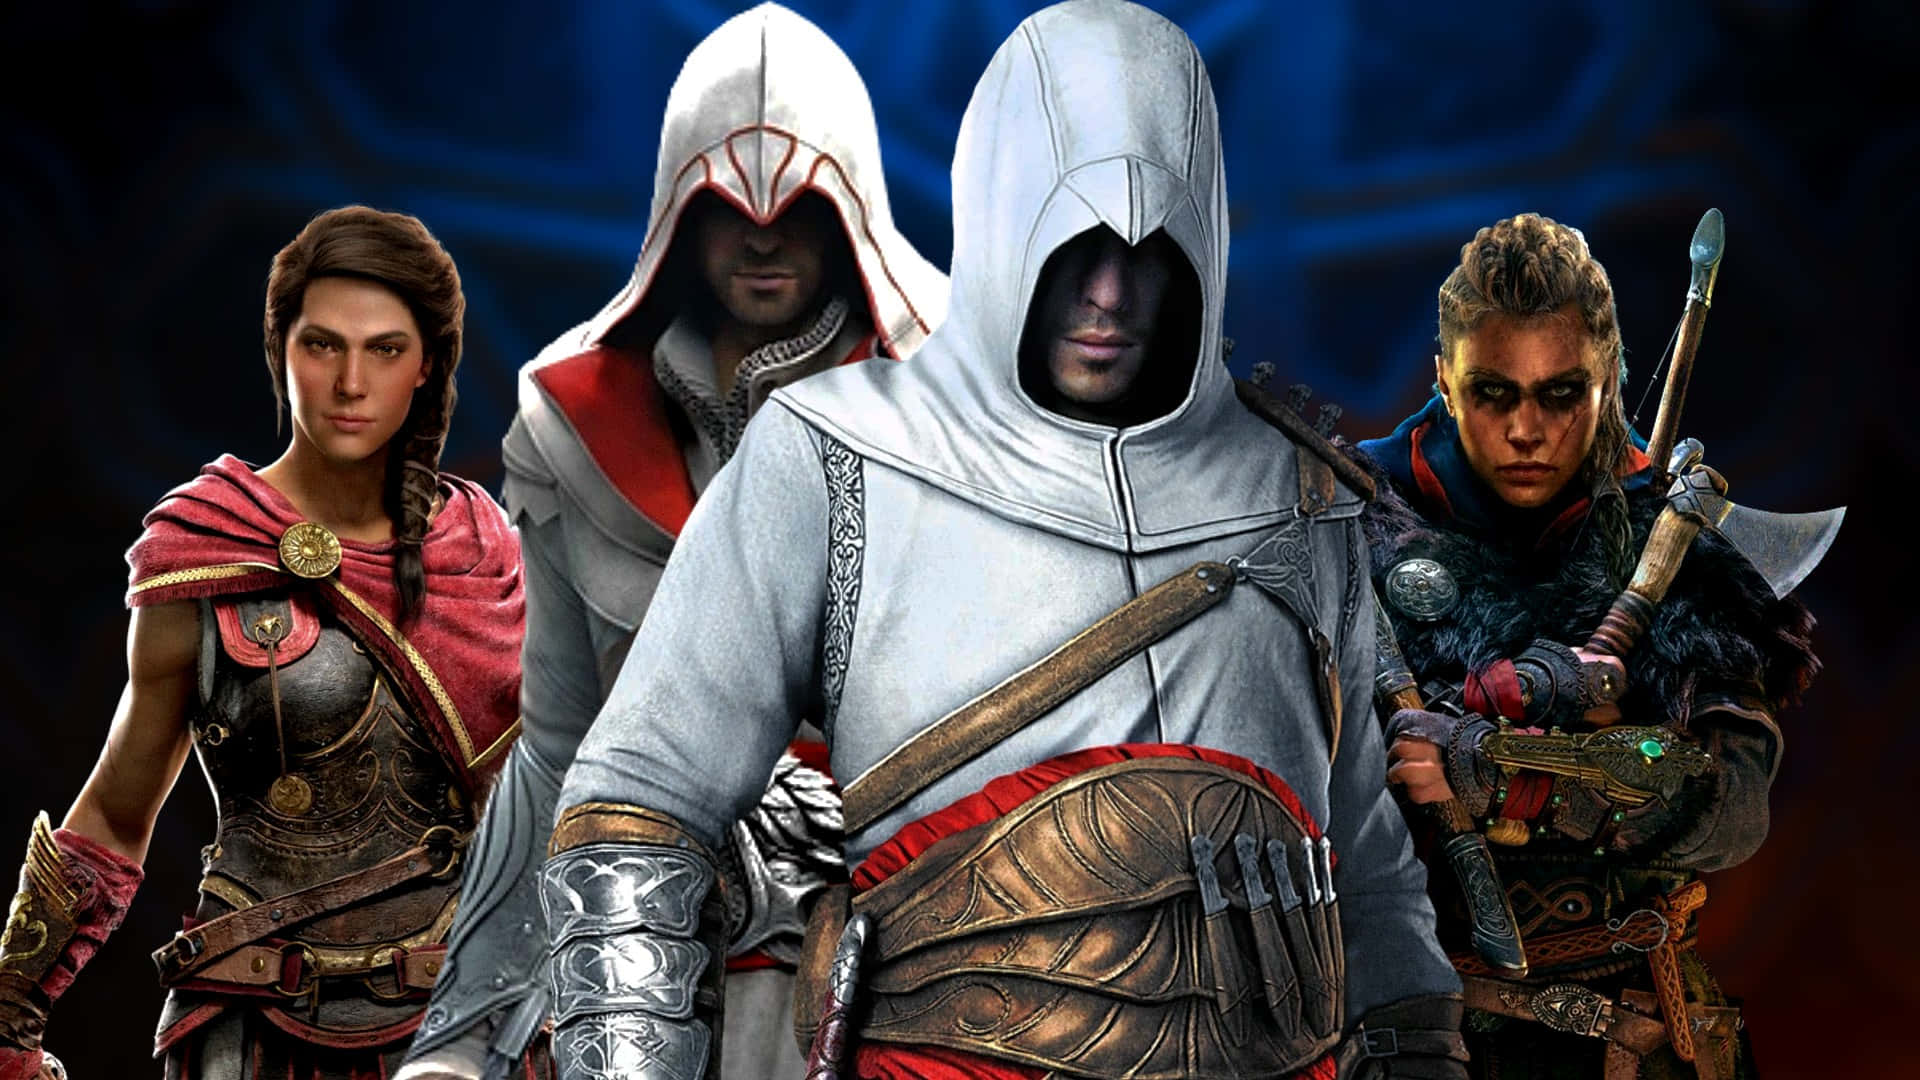 Rejse gennem det Gamle Egypten i Assassin's Creed Origins.